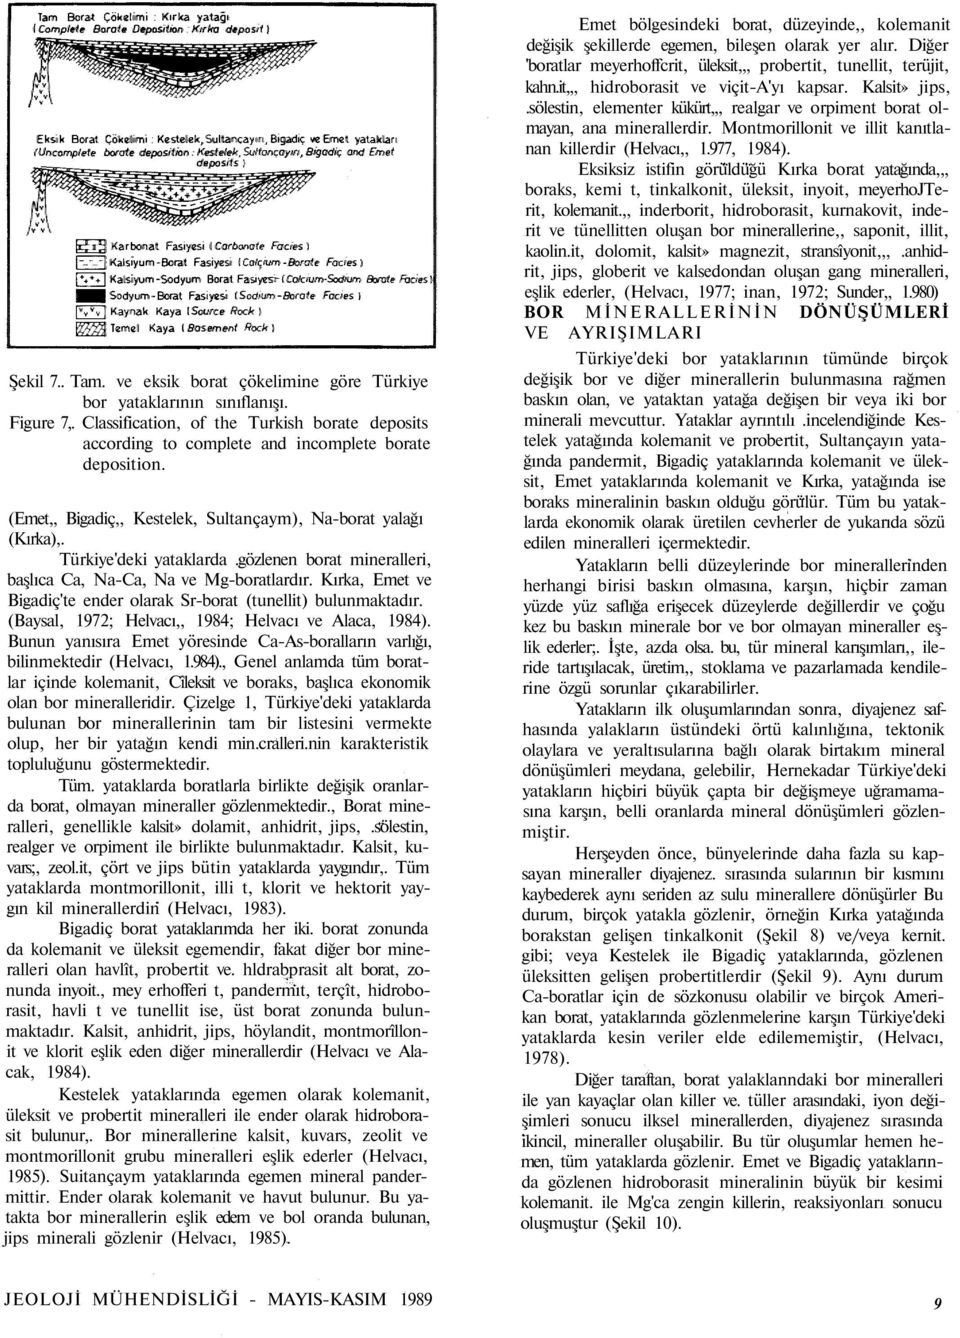 Kırka, Emet ve Bigadiç'te ender olarak Sr-borat (tunellit) bulunmaktadır. (Baysal, 1972; Helvacı,, 1984; Helvacı ve Alaca, 1984).